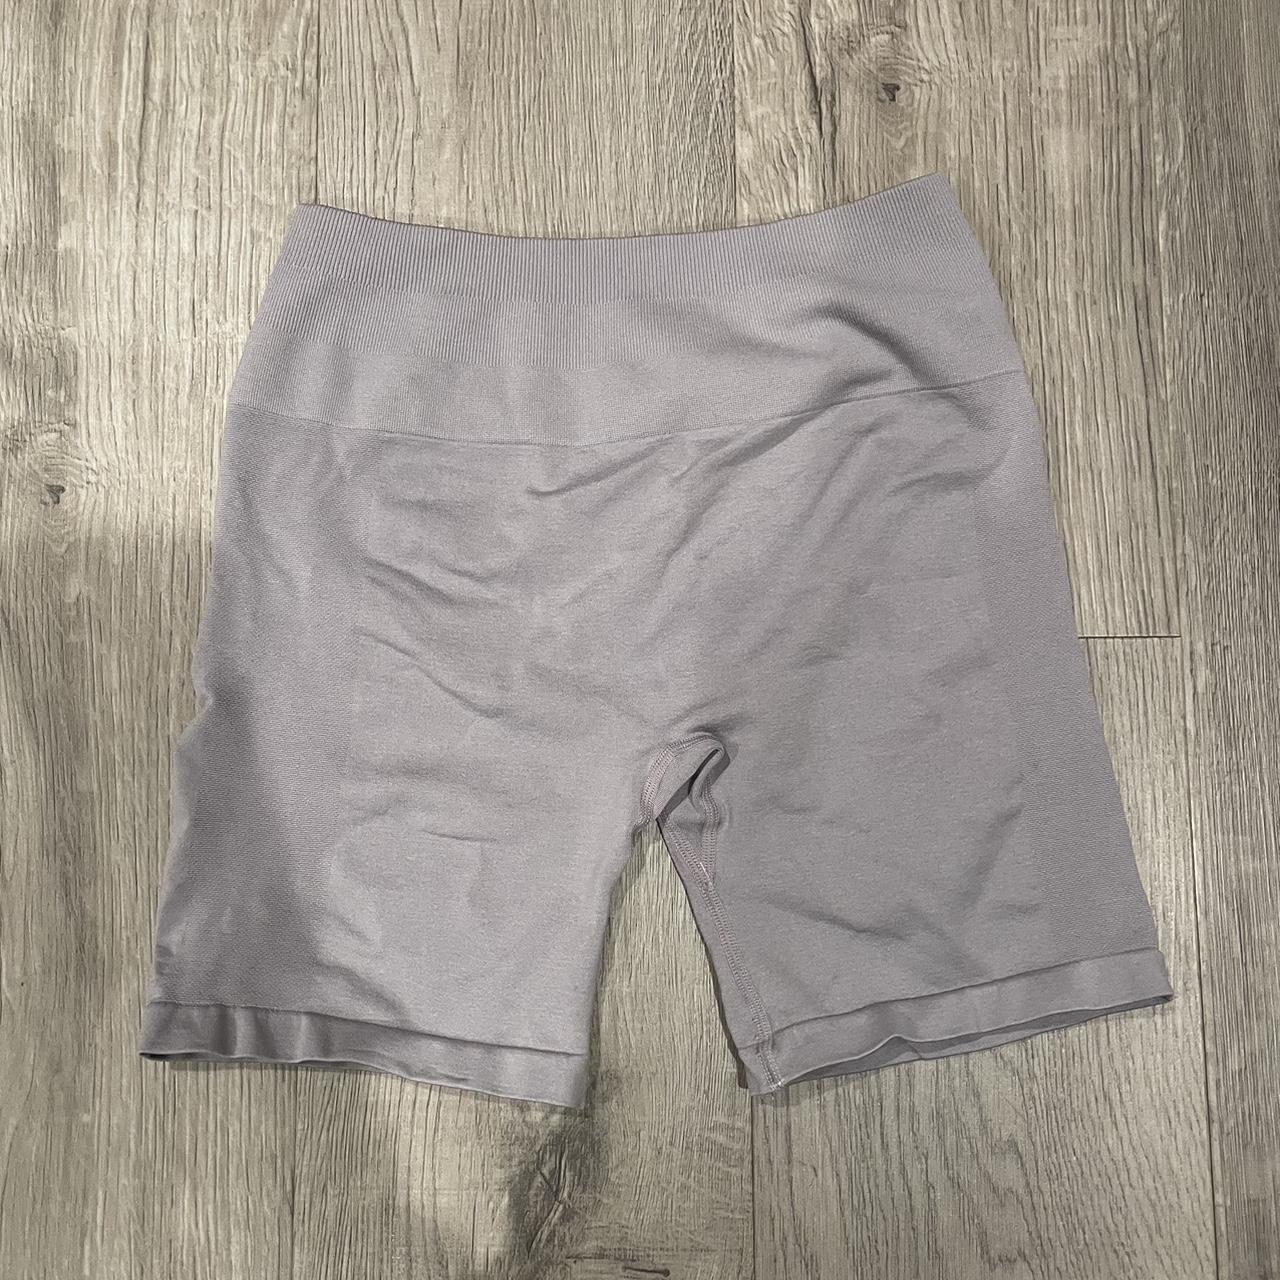 Aurola Workout shorts, worn a few times in perf - Depop